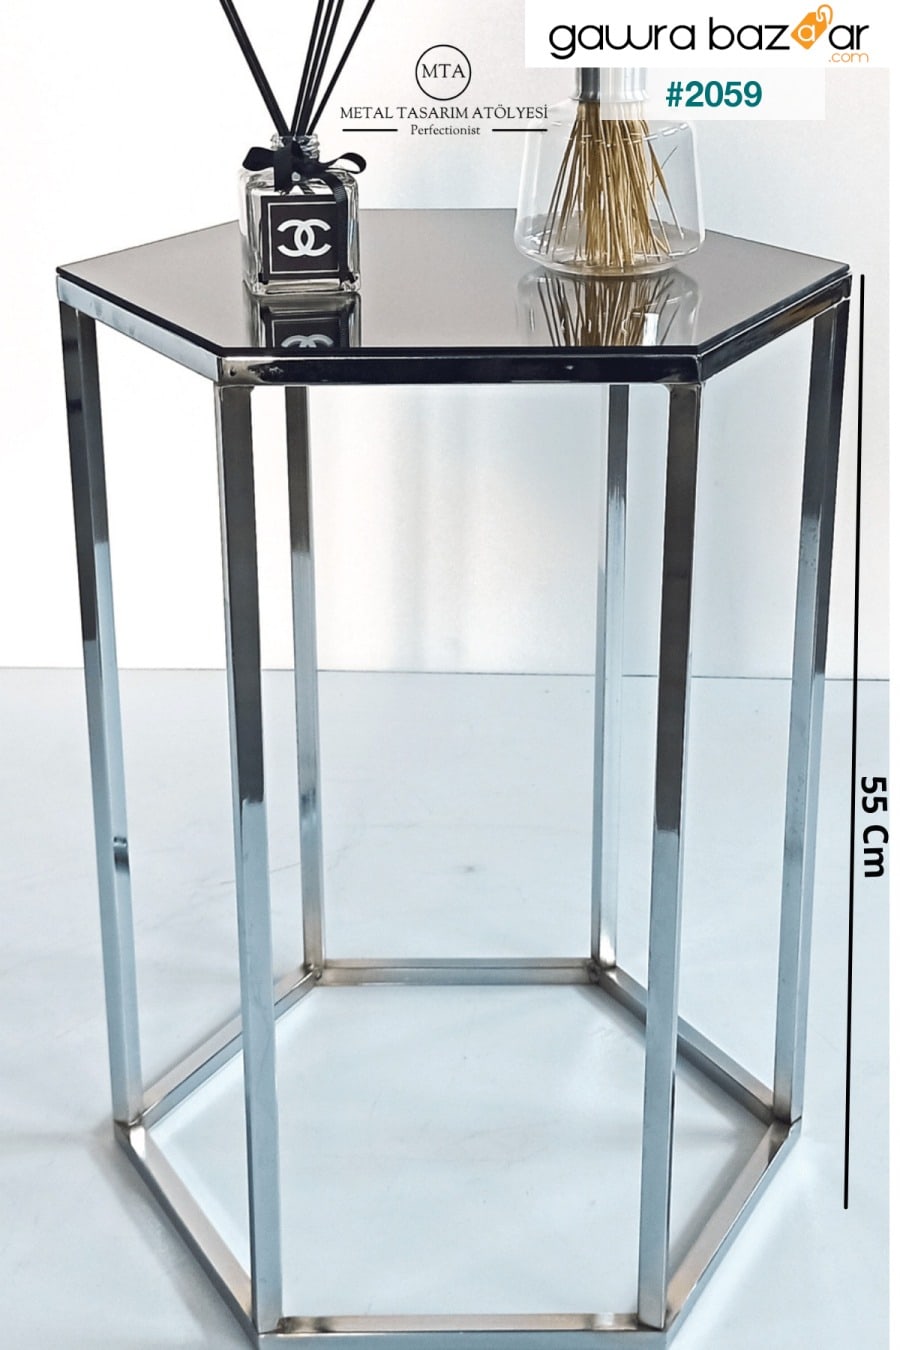 زاوية معدنية أرجل زجاجية ديكور طاولة جانبية وحامل كمبيوتر محمول وطاولة مكتب - فضي - دخاني METAL TASARIM ATÖLYESİ 2